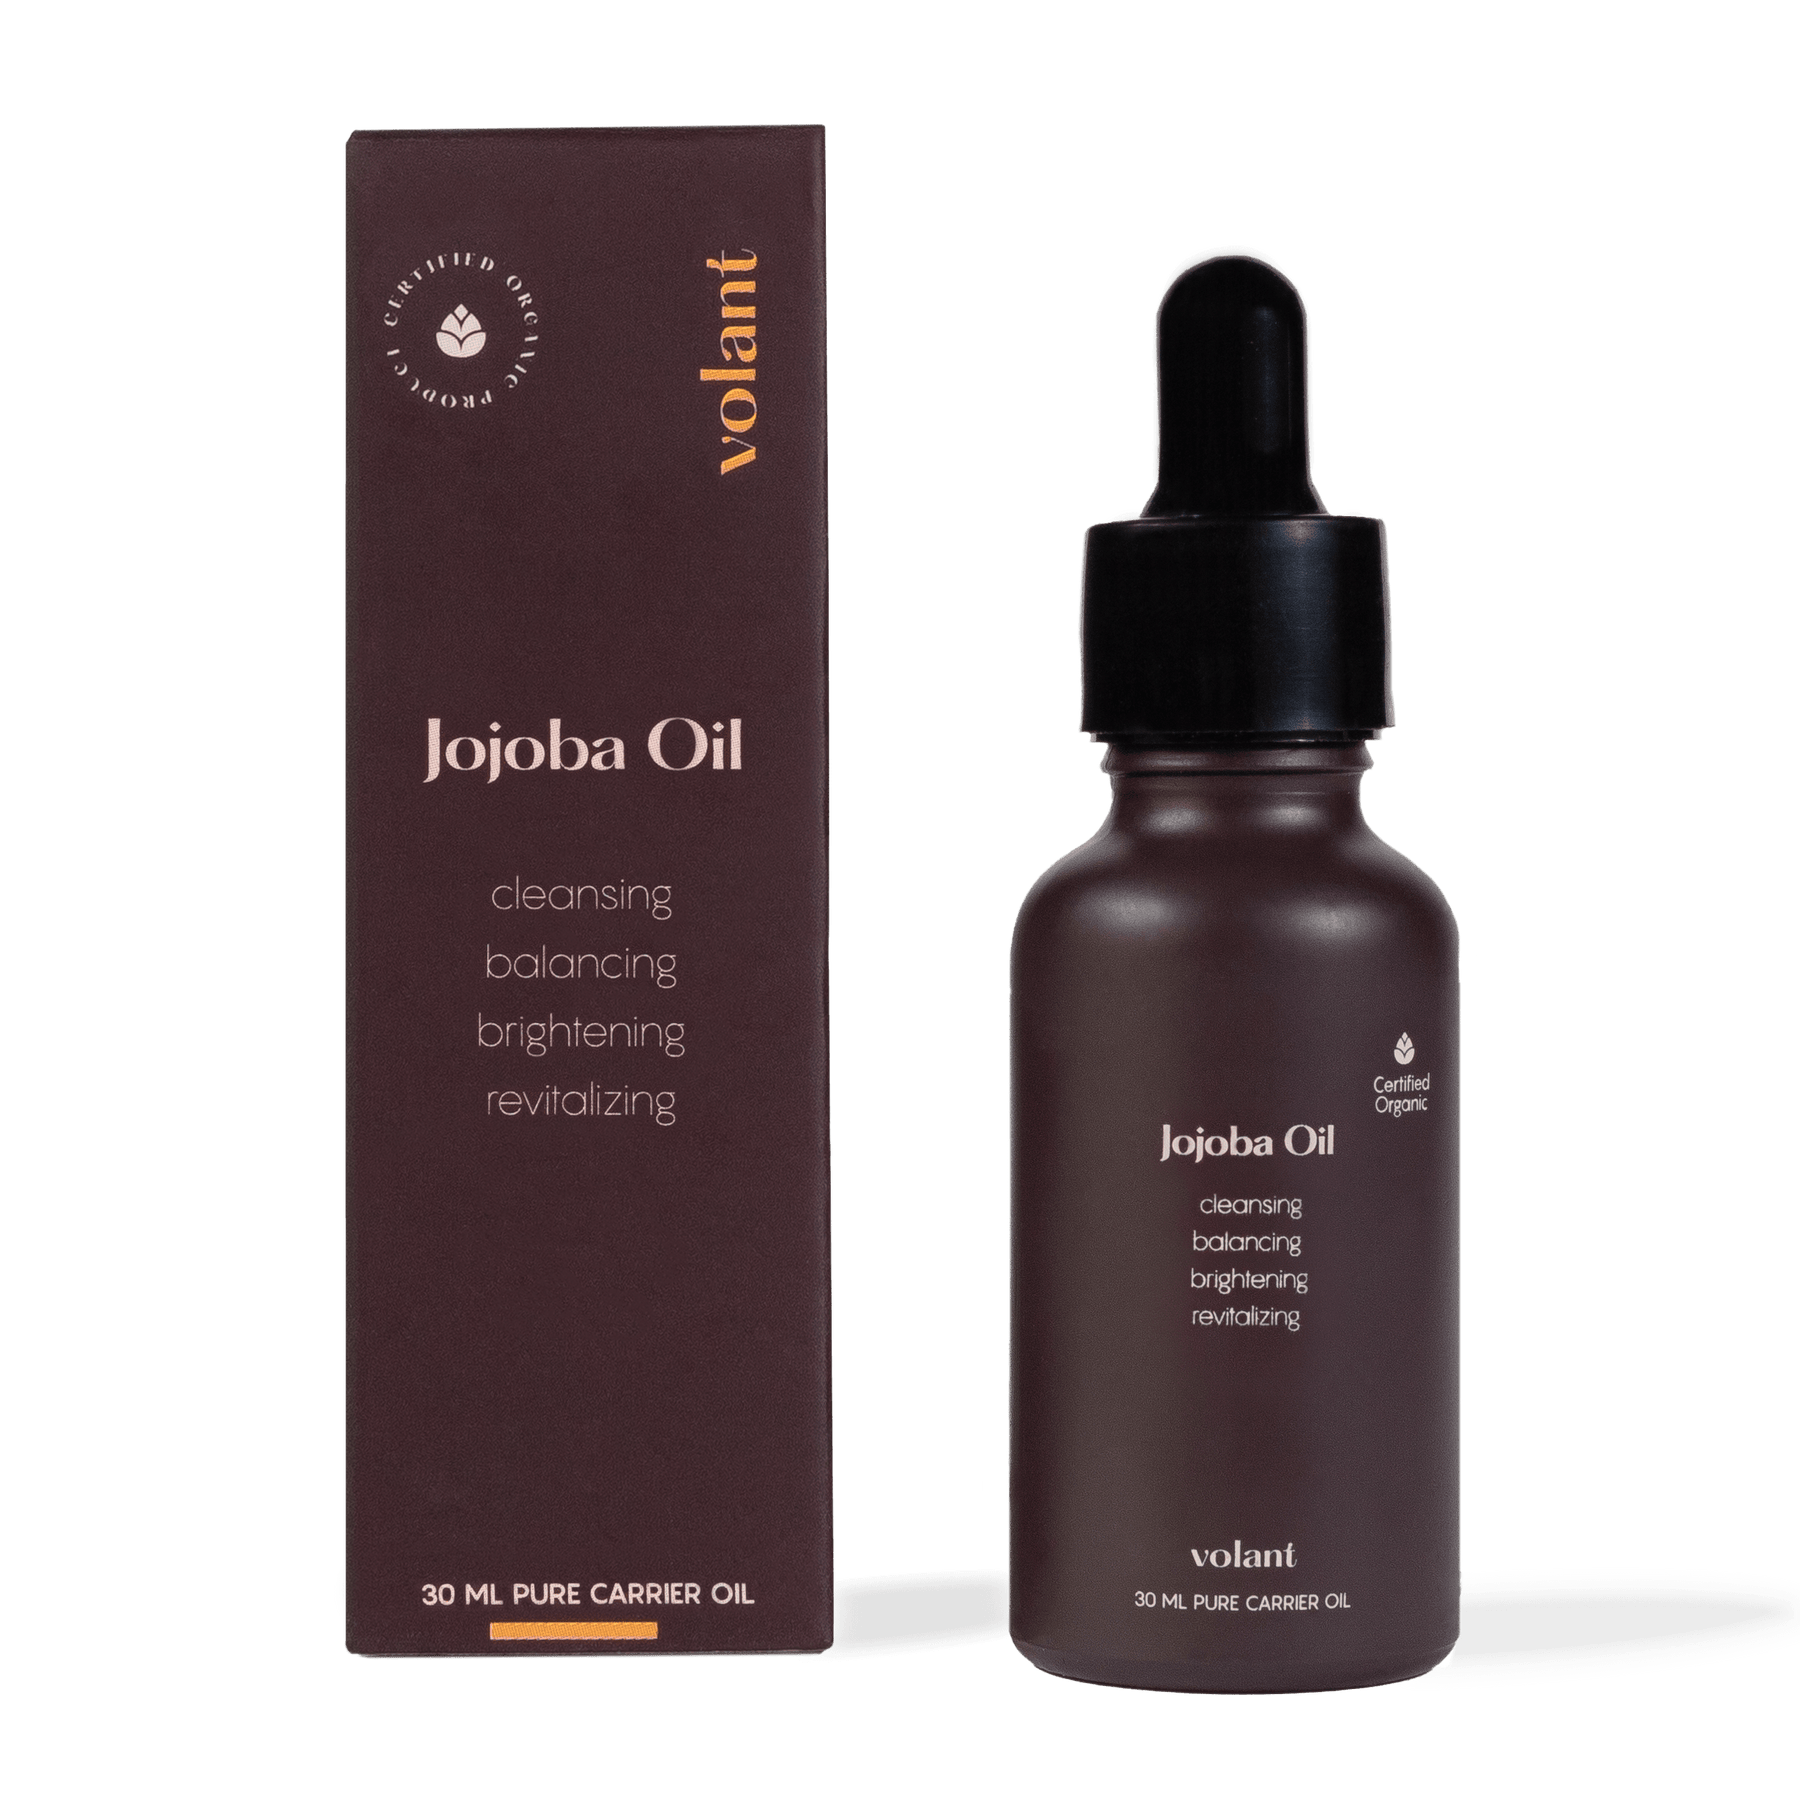 volant jojoba oil carrier oil packaging. best for hair and skin